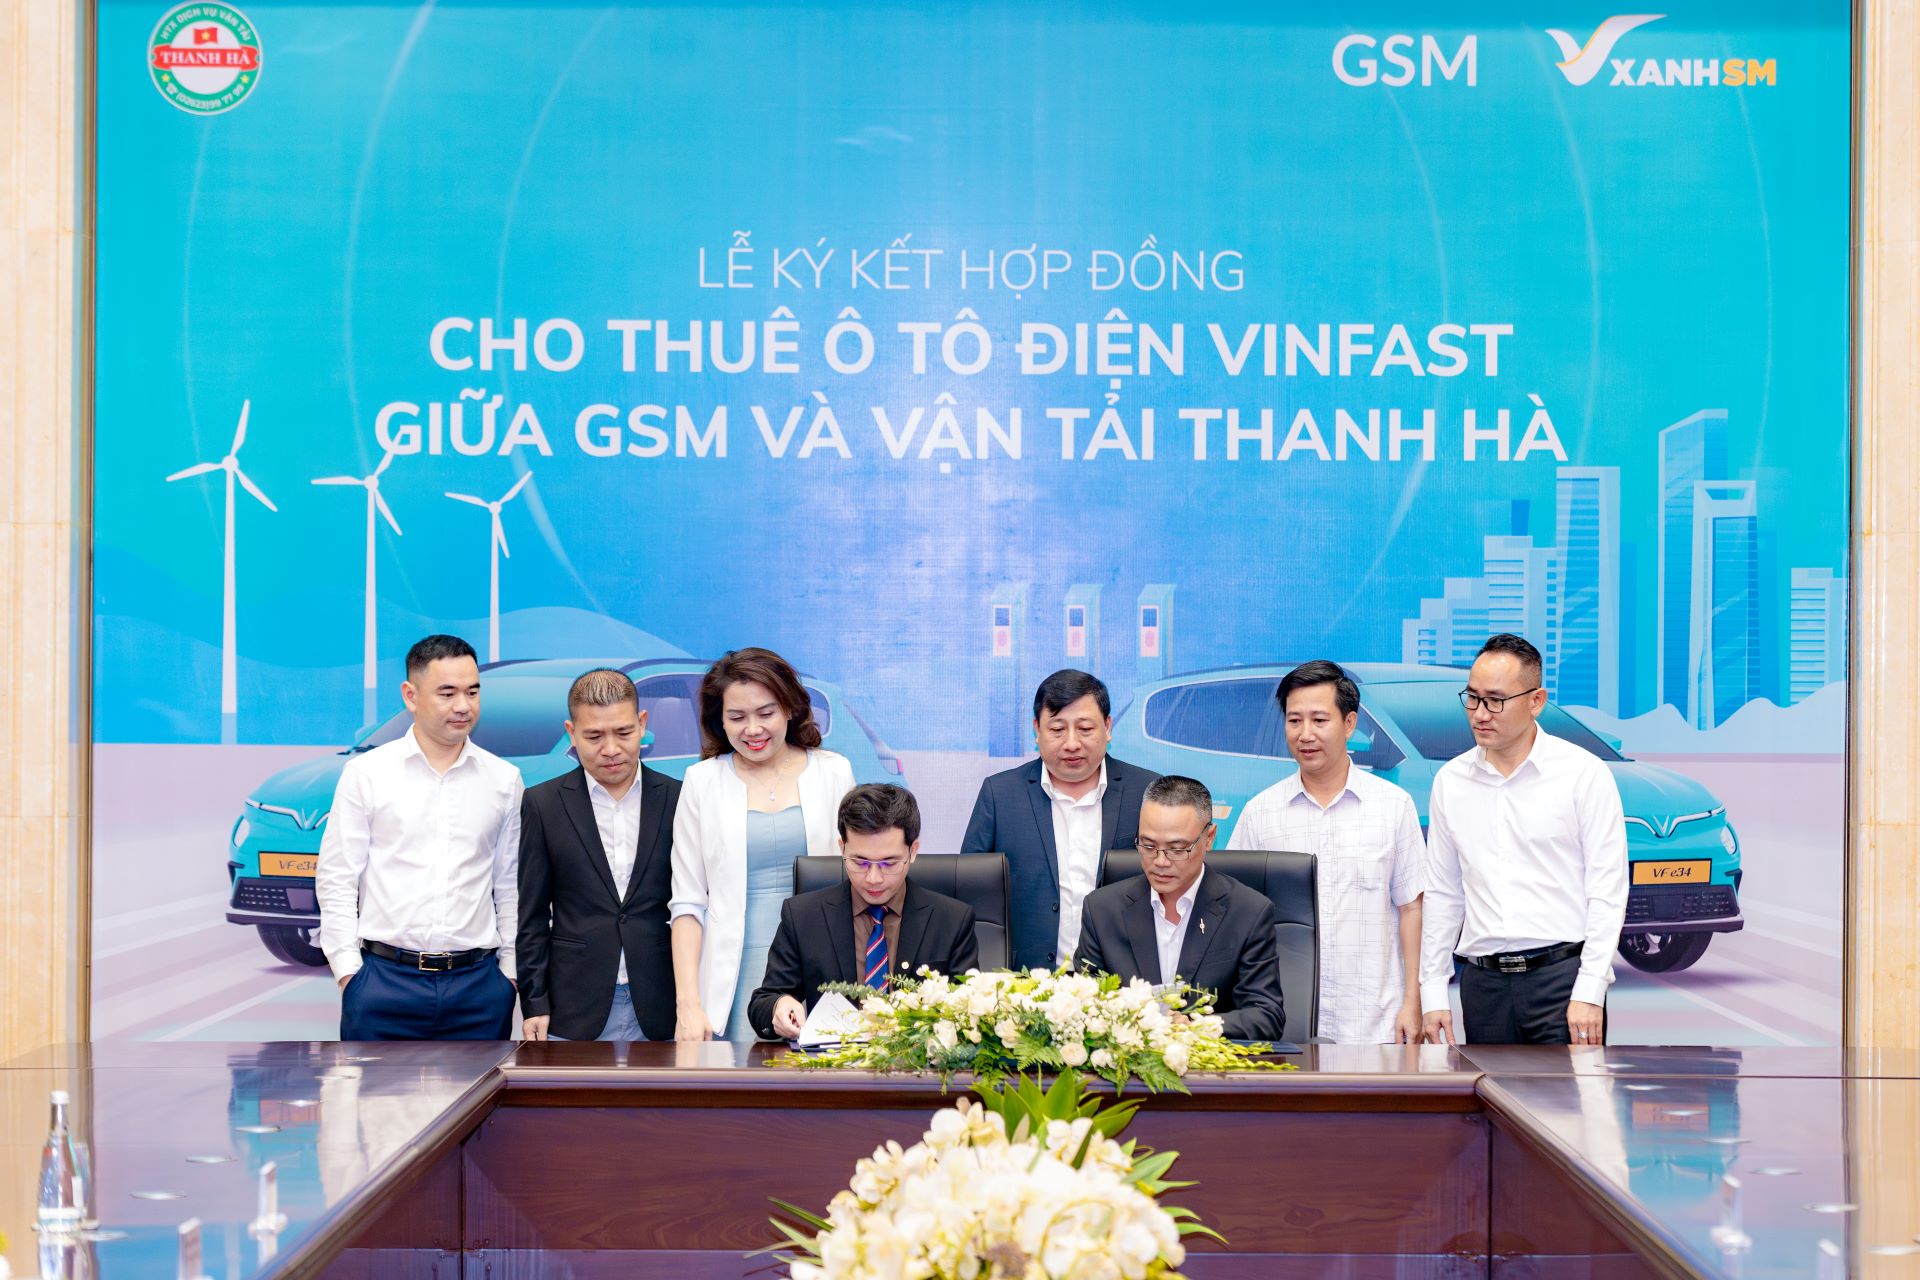 Hợp tác xã Vận tải Thanh Hà 250 xe ô tô điện VinFast từ GSM để cung cấp dịch vụ taxi điện tại Đắk Lắk - Ảnh 2.